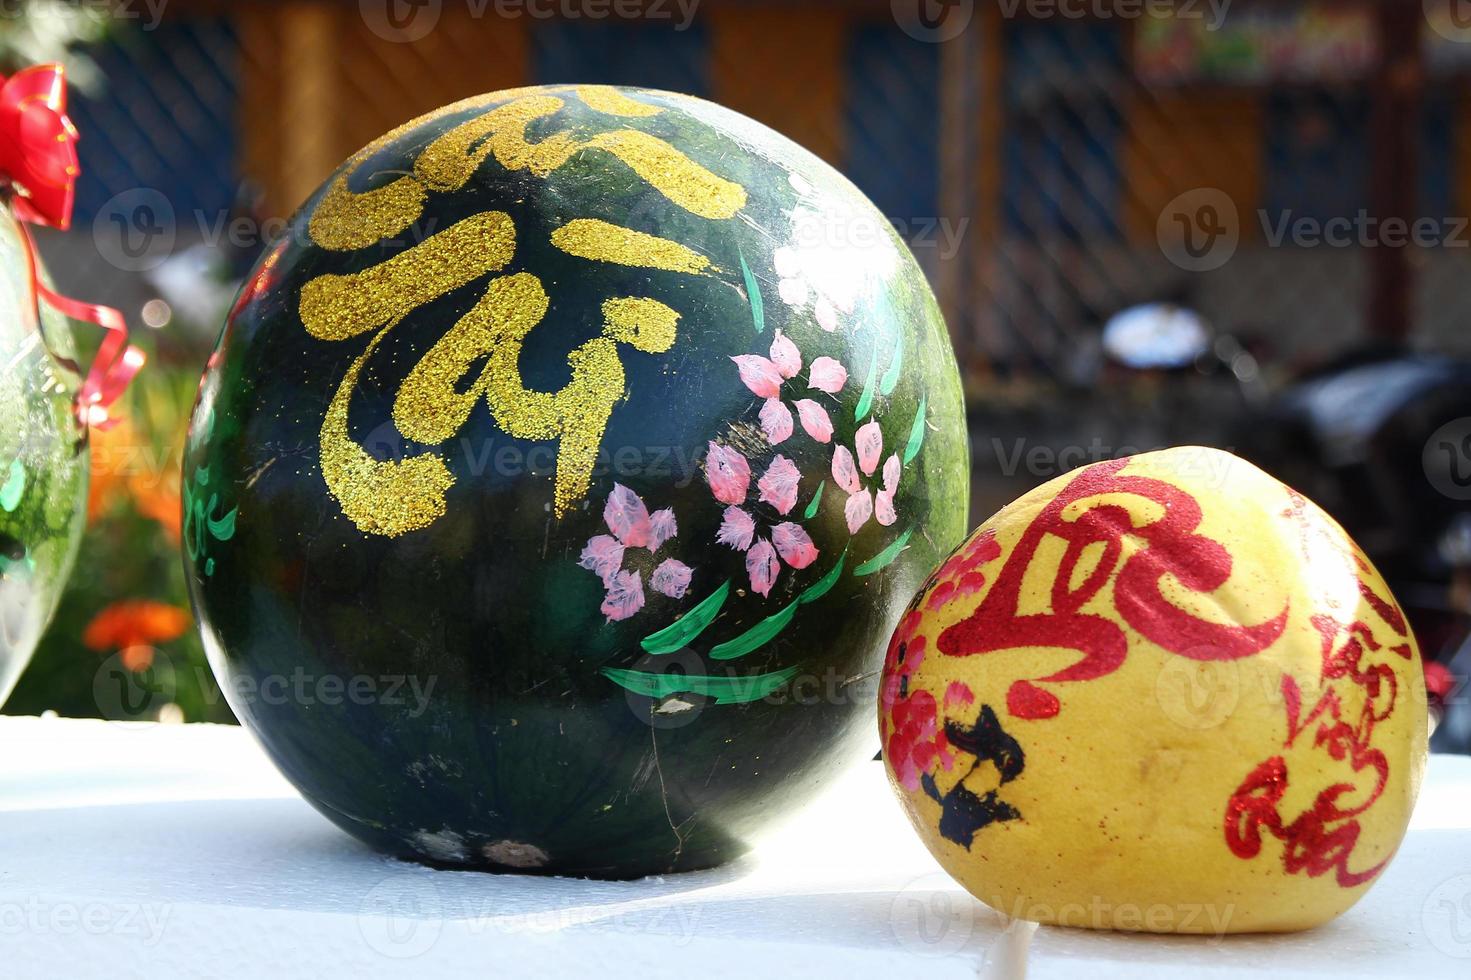 pastèque et pamplemousse décorés pour la célébration du nouvel an vietnamien sur un marché à hoi an, vietnam. l'inscription est traduite - prospérité pour vous, fortune. photo